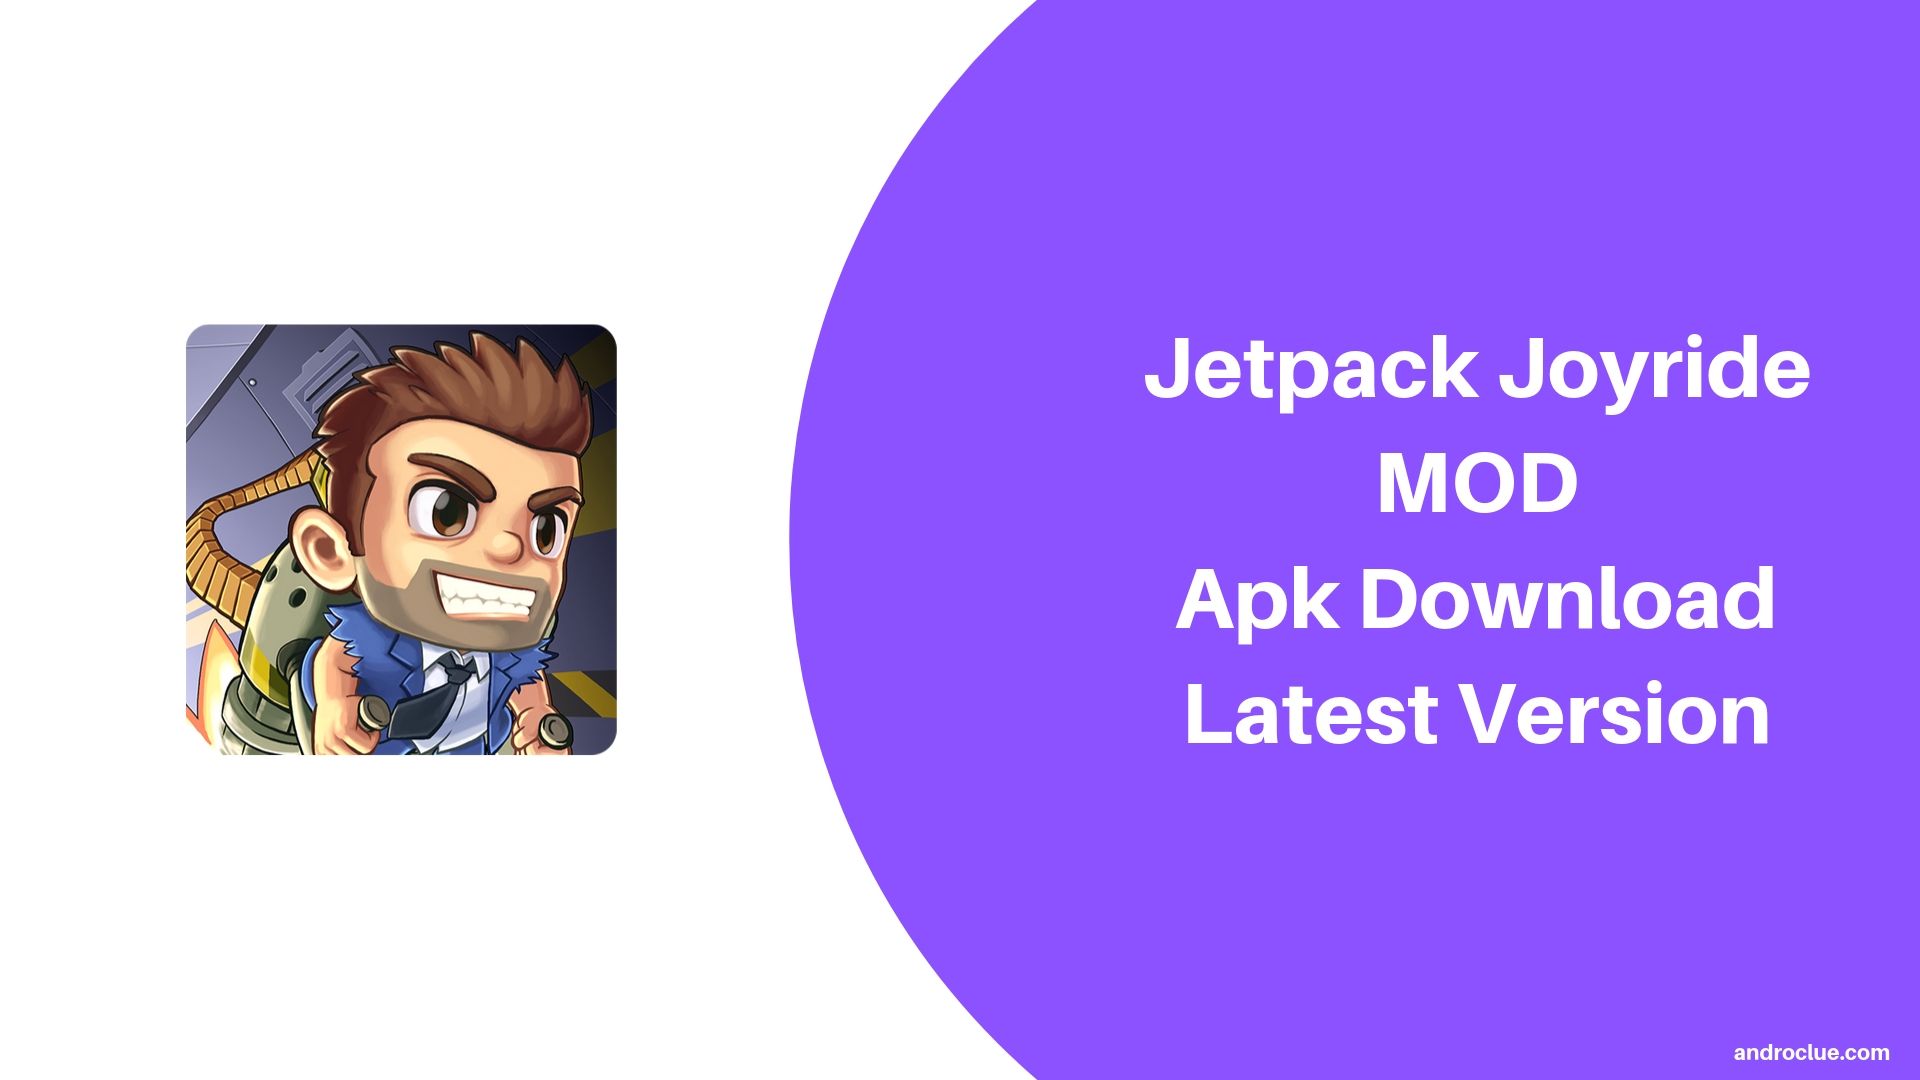 Jetpack Joyride MOD Apk Download Latest v1.20.2 for Android (2019)